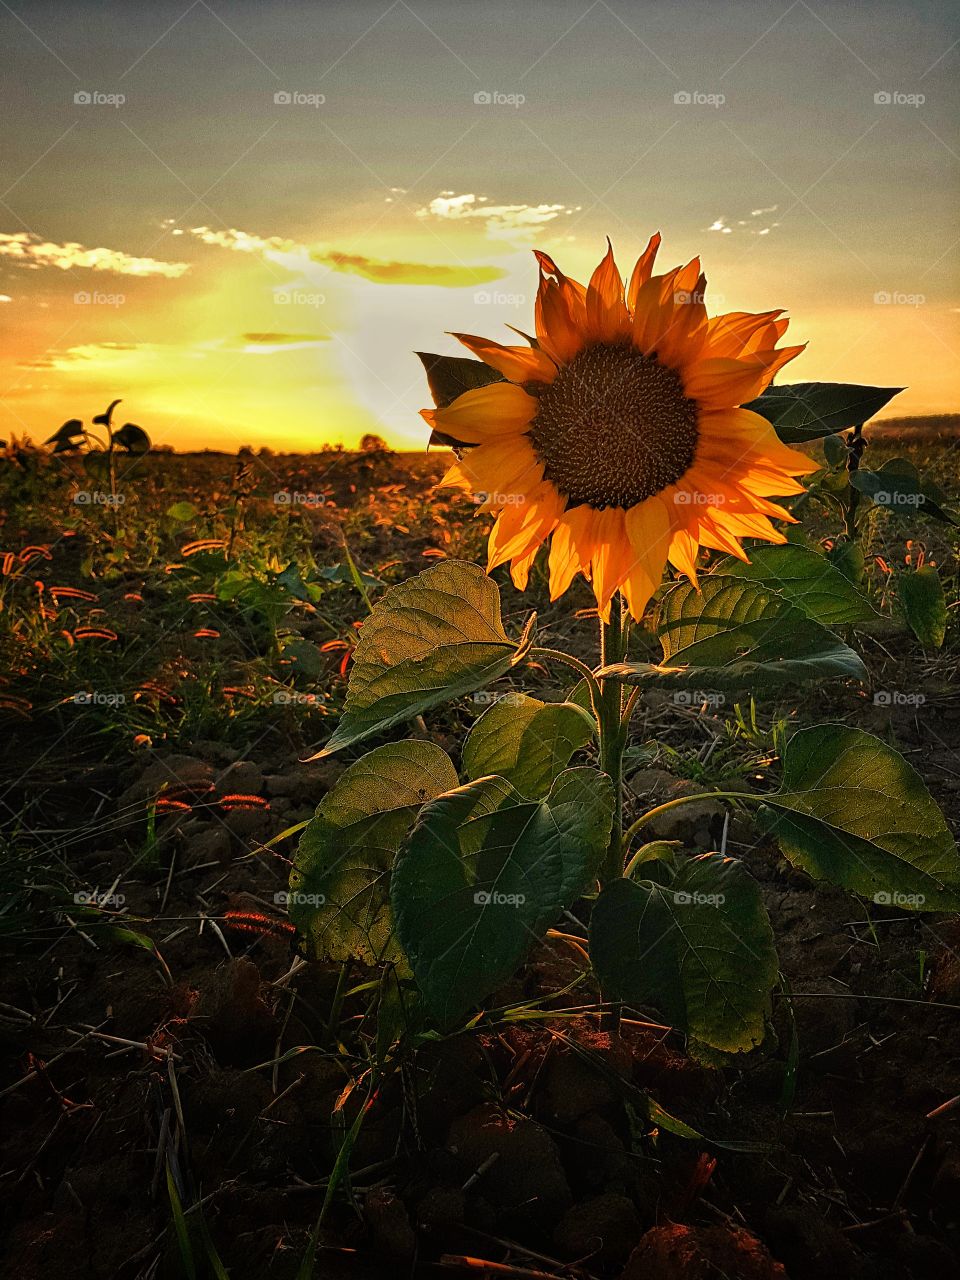 The last autumn sunflower.